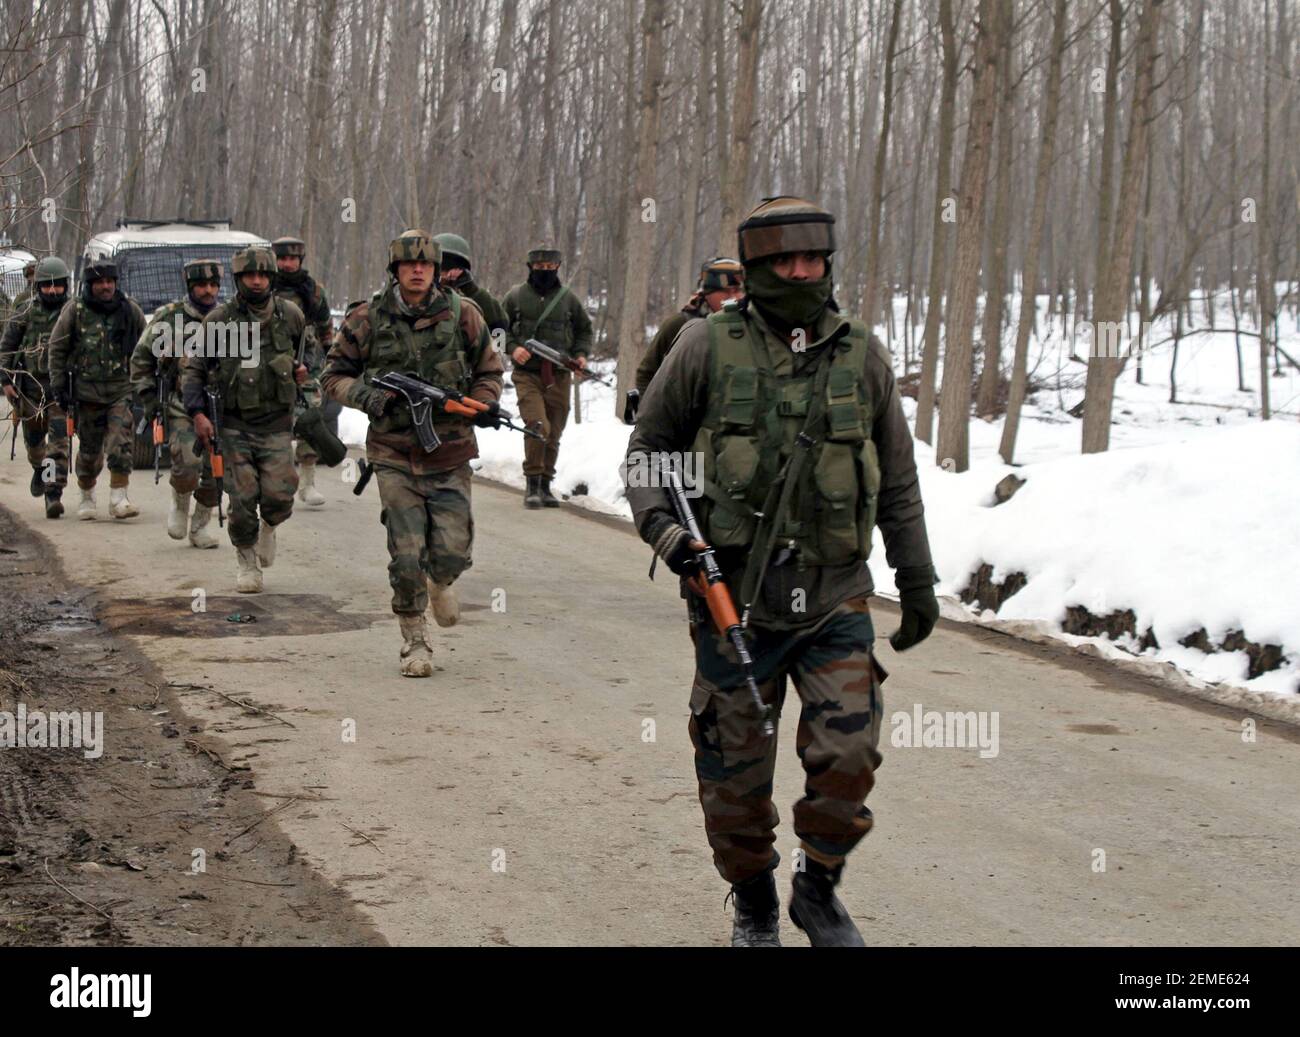 SRINAGAR, INDE – FÉVRIER 12 : les forces de sécurité près du site de rencontre dans la région de Ratnipora, dans le district de Pulwama au sud du Cachemire, à environ 30 kilomètres au sud de Srinagar, le 12 février 2019 à Jammu-et-Cachemire, en Inde. Un soldat et un militant ont été tués alors qu'une maison résidentielle où les militants se cachaient a été endommagée lors de la féroce fusillade. (Photo par Waseem Andrabi/ Hindustan Times/Sipa USA) Banque D'Images